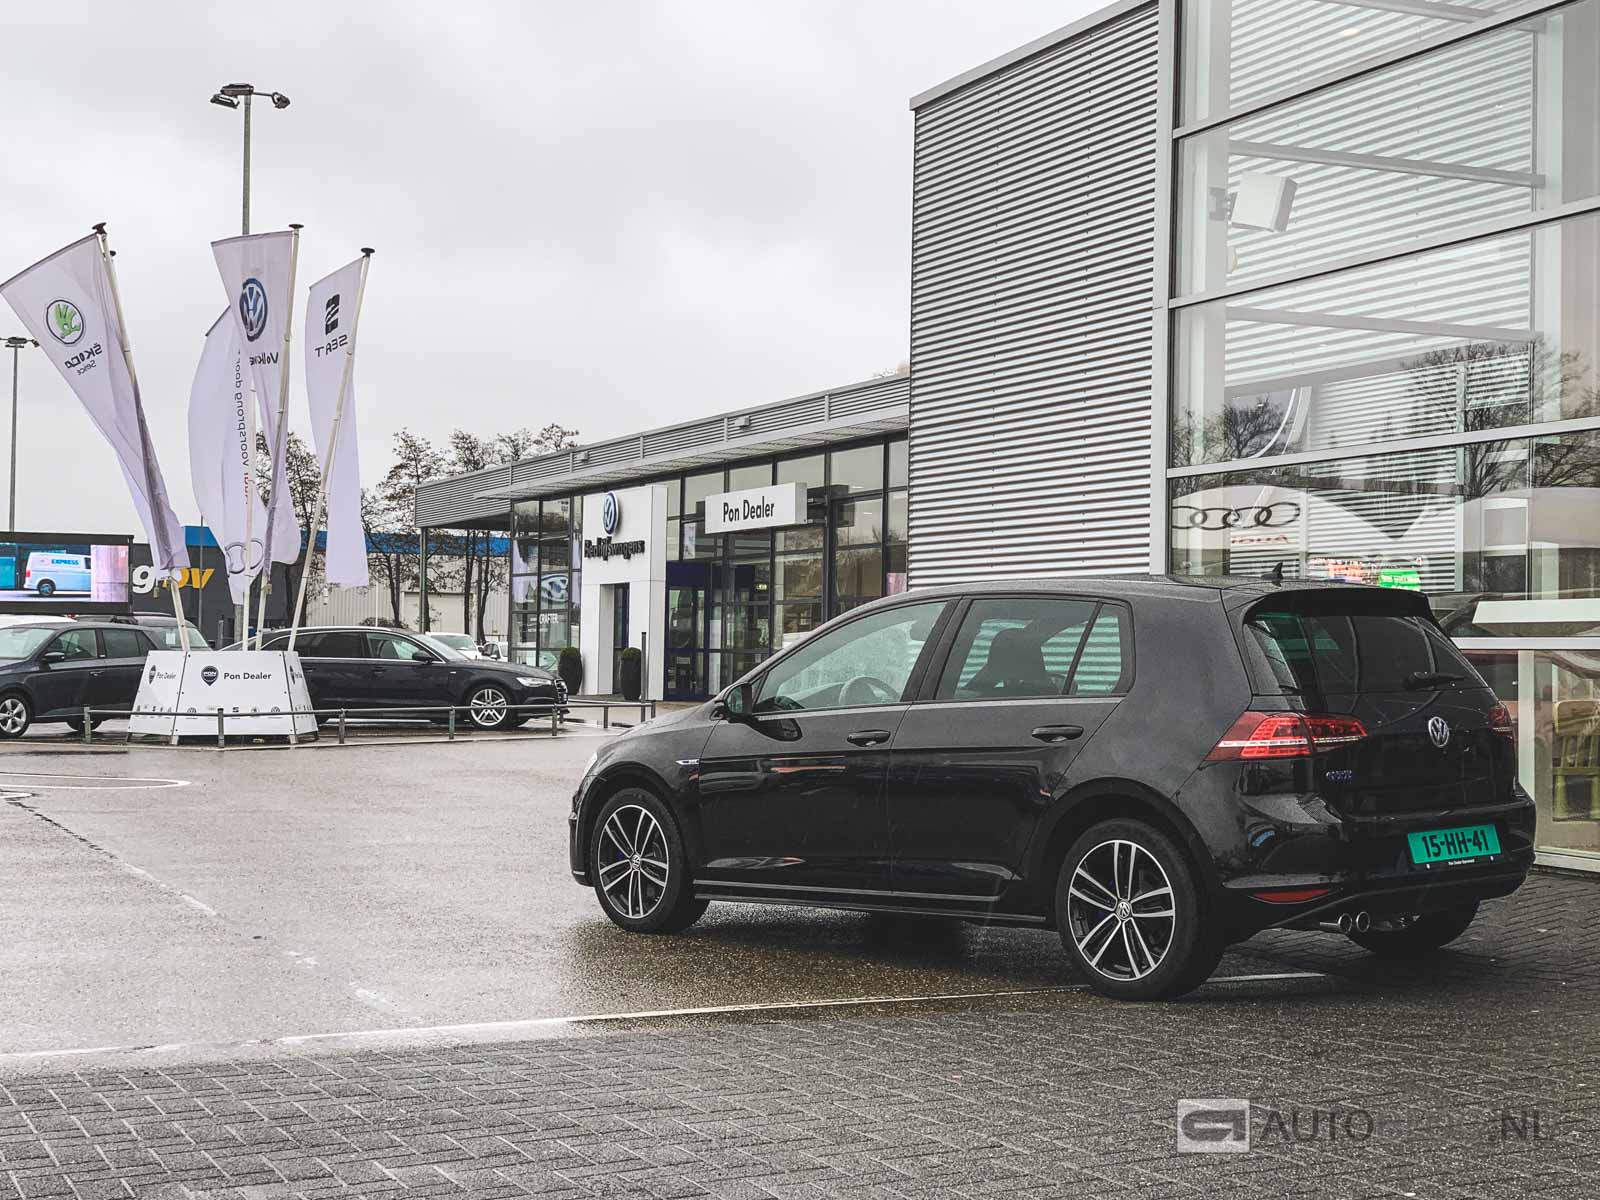 Verval ik ben gelukkig stoom Volkswagen Golf GTE occasion aankoopadvies en video - Autoblog.nl